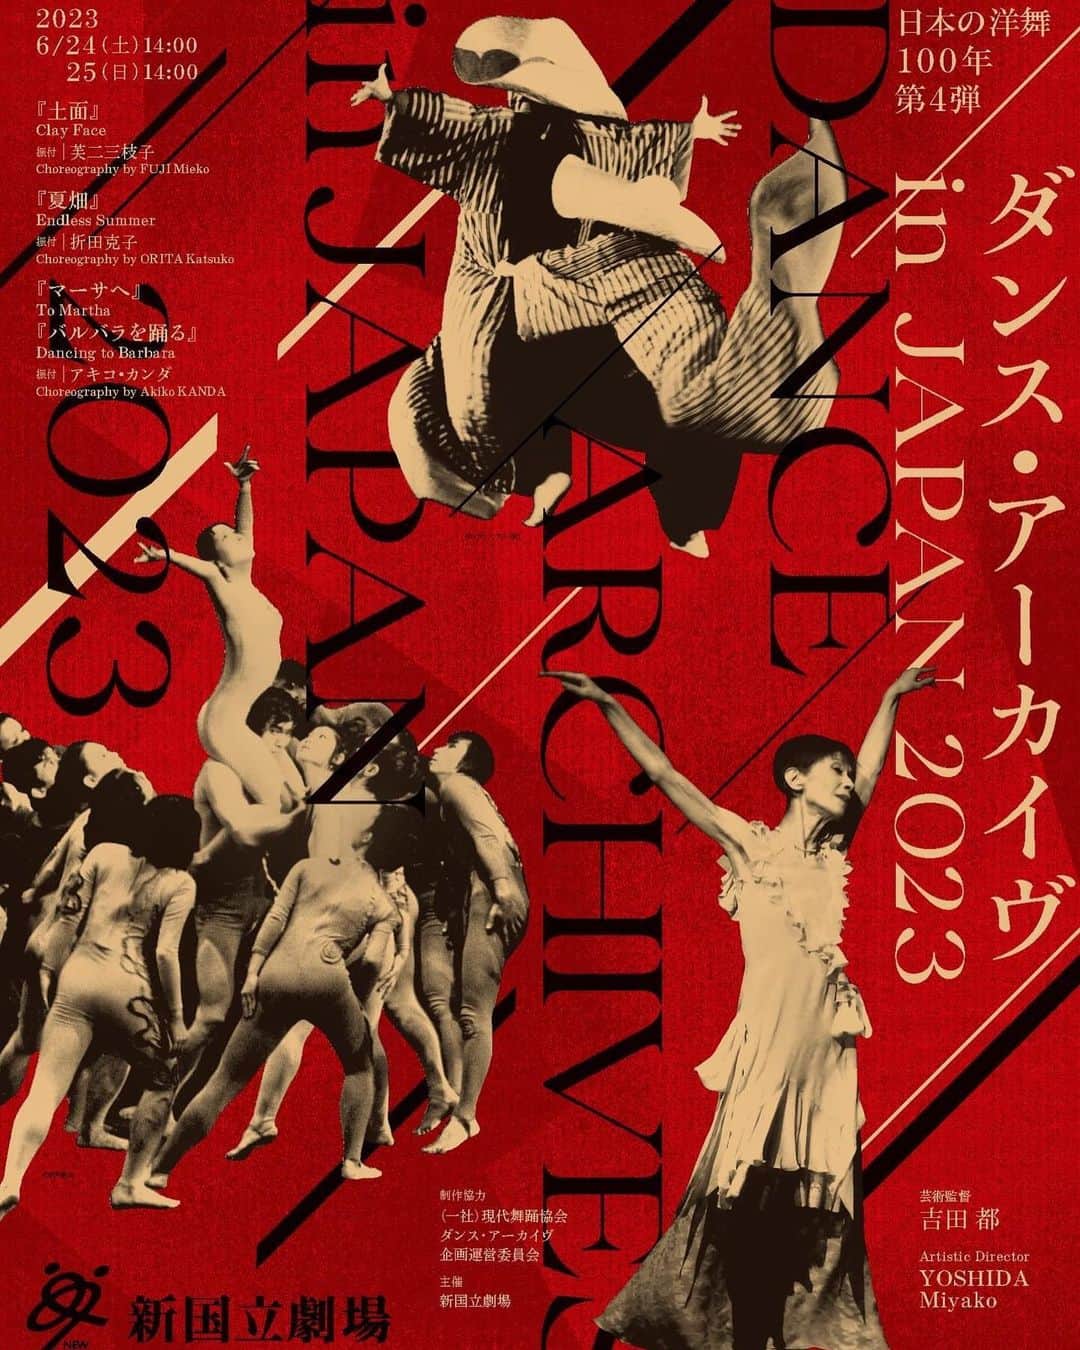 冨岡瑞希のインスタグラム：「6/24.25  ダンス・アーカイヴ in JAPAN 2023  私は、アキコカンダさんの作品「マーサへ」に出演させていただきます🪽 このような公演に出演させていただけること、ものすごく光栄で、 たくさんのことを吸収できたらなと思っています！  他の作品もダンスアーカイヴならではの作品が盛りだくさんです✨  お時間ありましたら、ぜひ皆様お越しください😊  ------------------------------------  「ダンス・アーカイヴ in JAPAN 2023」 新国立劇場　中劇場  『土面』（1972年初演） 【振付】芙二三枝子 【音楽】三木 稔、松村禎三　ほか 【出演】高瀬譜希子、中川 賢　ほか  『夏畑』（1983年初演） 【振付】折田克子 【音楽】マラン・ゴゾフ 【出演】平山素子、島地保武  『マーサへ』 より　三章「運命の道」（2002年初演） 【振付】アキコ・カンダ 【音楽】フレデリック・ショパン 【出演】折原美樹　ほか  『バルバラを踊る』 より（1980年初演） 【振付】アキコ・カンダ 【音楽】バルバラ 【出演】中村恩恵  ＜公演日程＞ 6月24日(土)14:00 / 25(日)14:00 全2公演  ＜チケット料金＞ S席6,600円 A席4,400円  https://www.nntt.jac.go.jp/dance/dancearchive/」